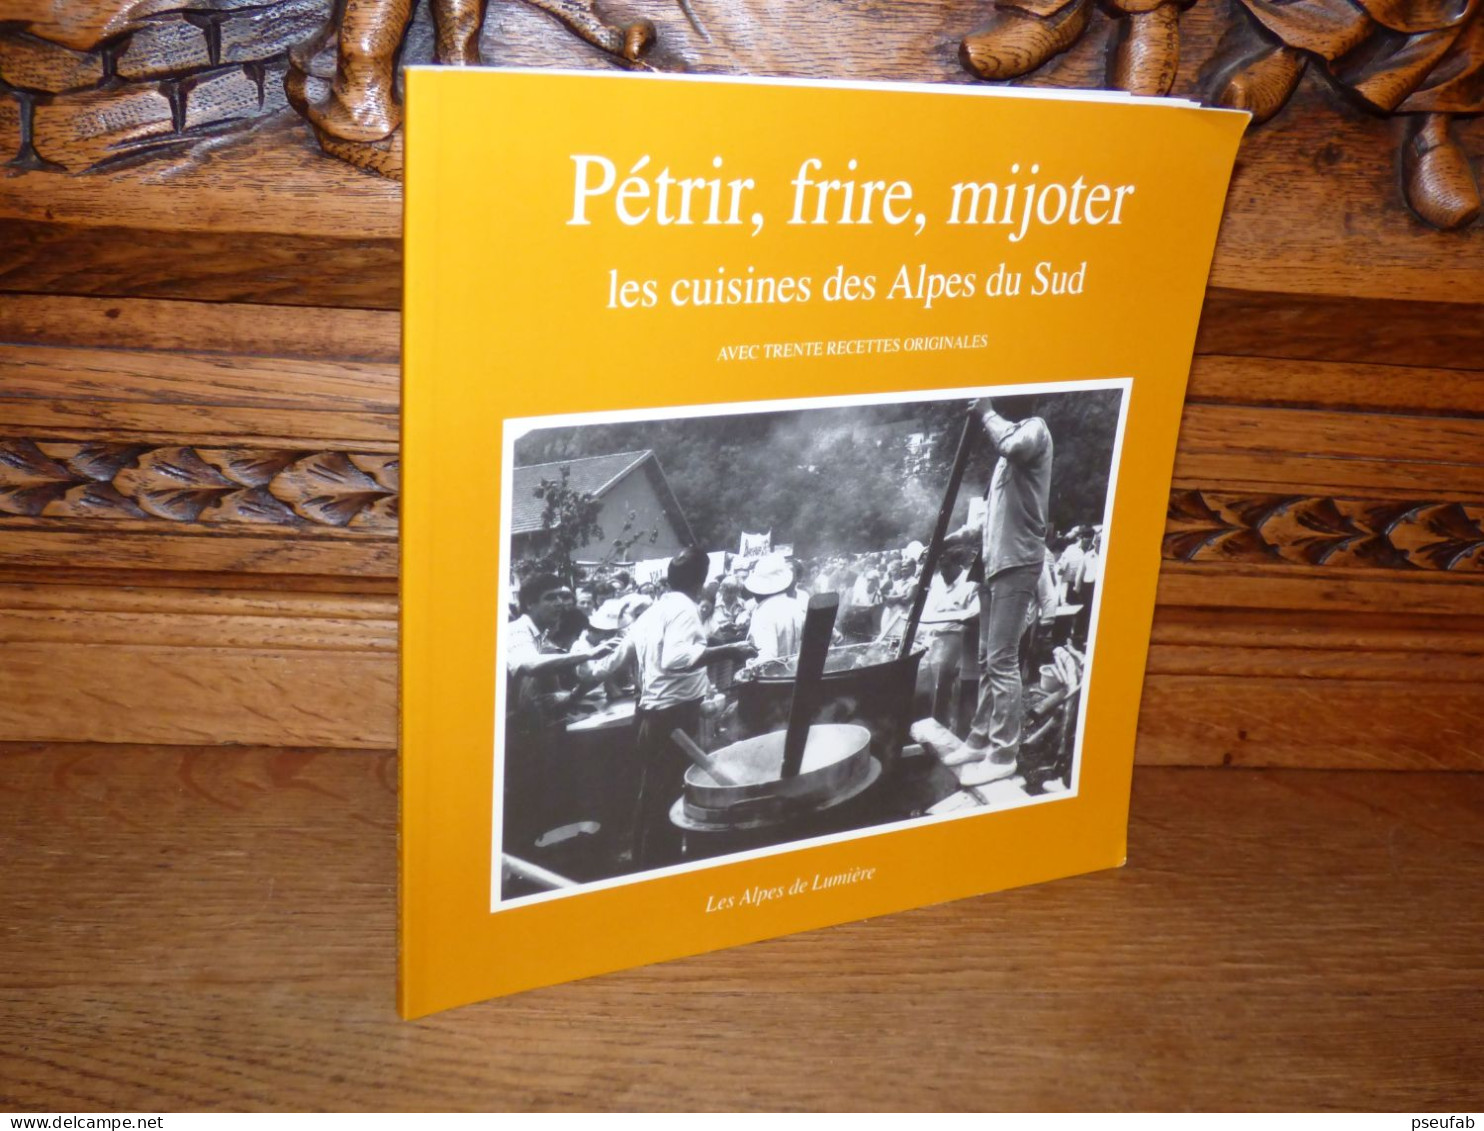 PETRIR FRIRE MIJOTER / LES CUISINES DES ALPES DU SUD - Provence - Alpes-du-Sud